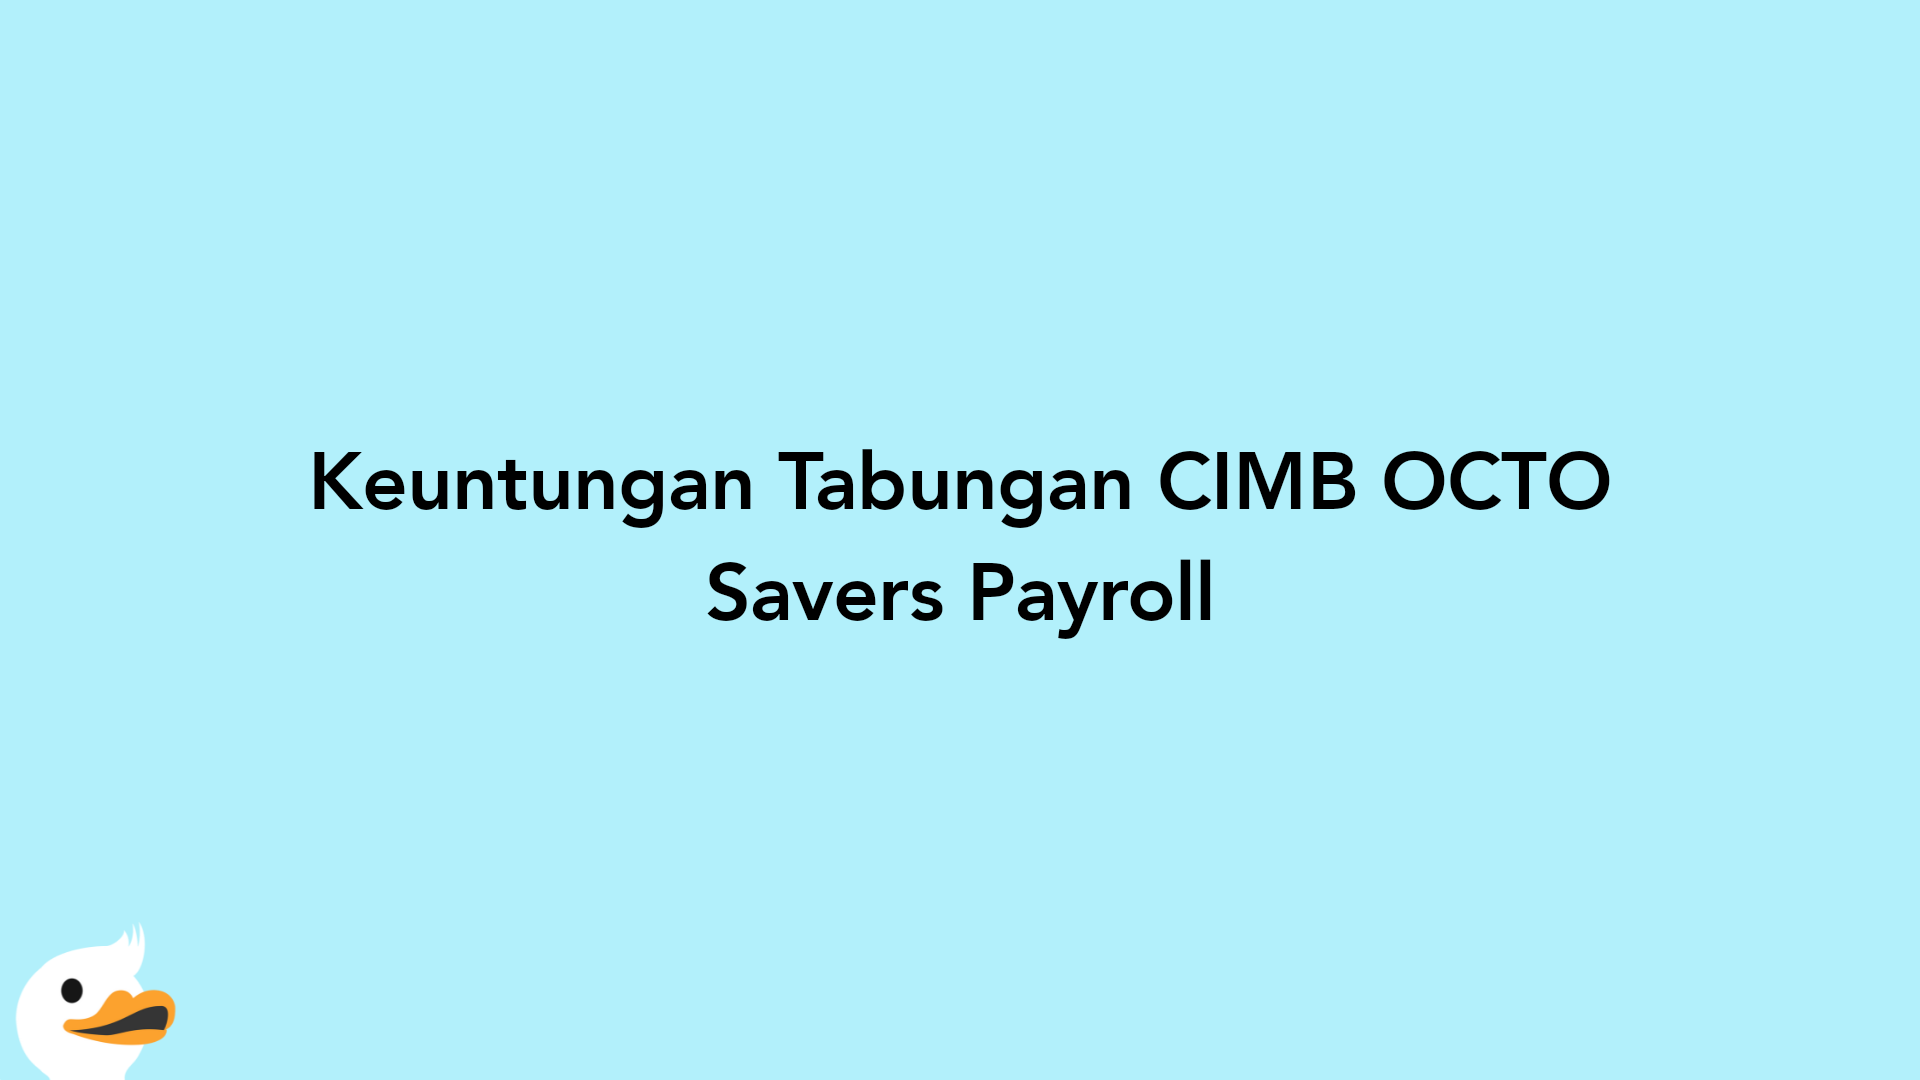 Keuntungan Tabungan CIMB OCTO Savers Payroll